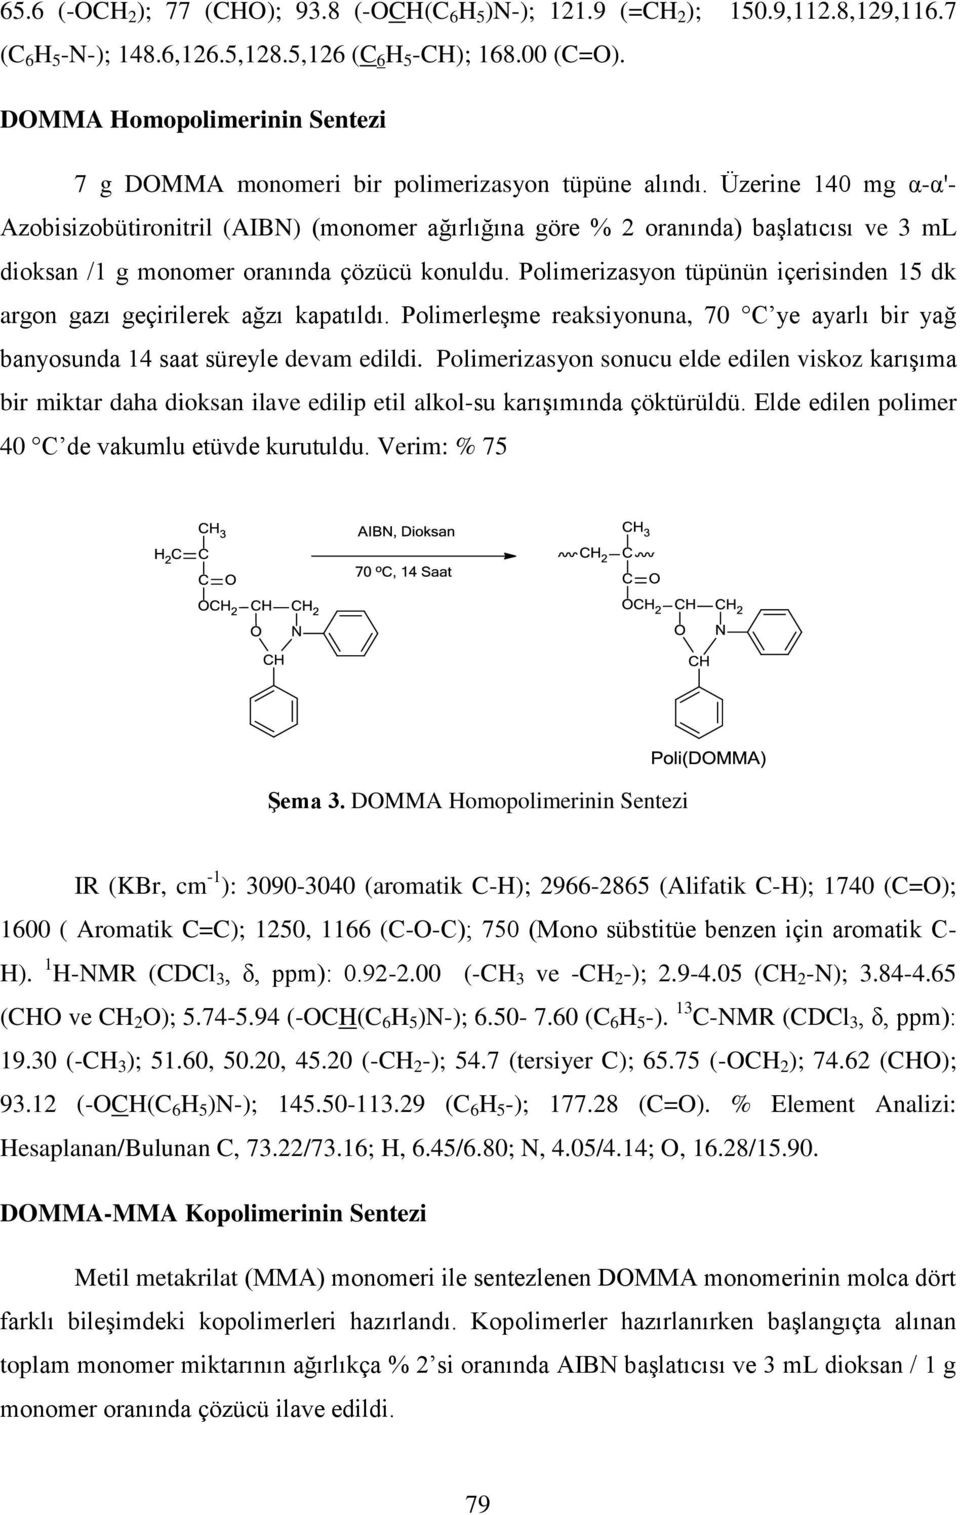 Üzerine 140 mg α-α'- Azobisizobütironitril (AIBN) (monomer ağırlığına göre % 2 oranında) başlatıcısı ve 3 ml dioksan /1 g monomer oranında çözücü konuldu.